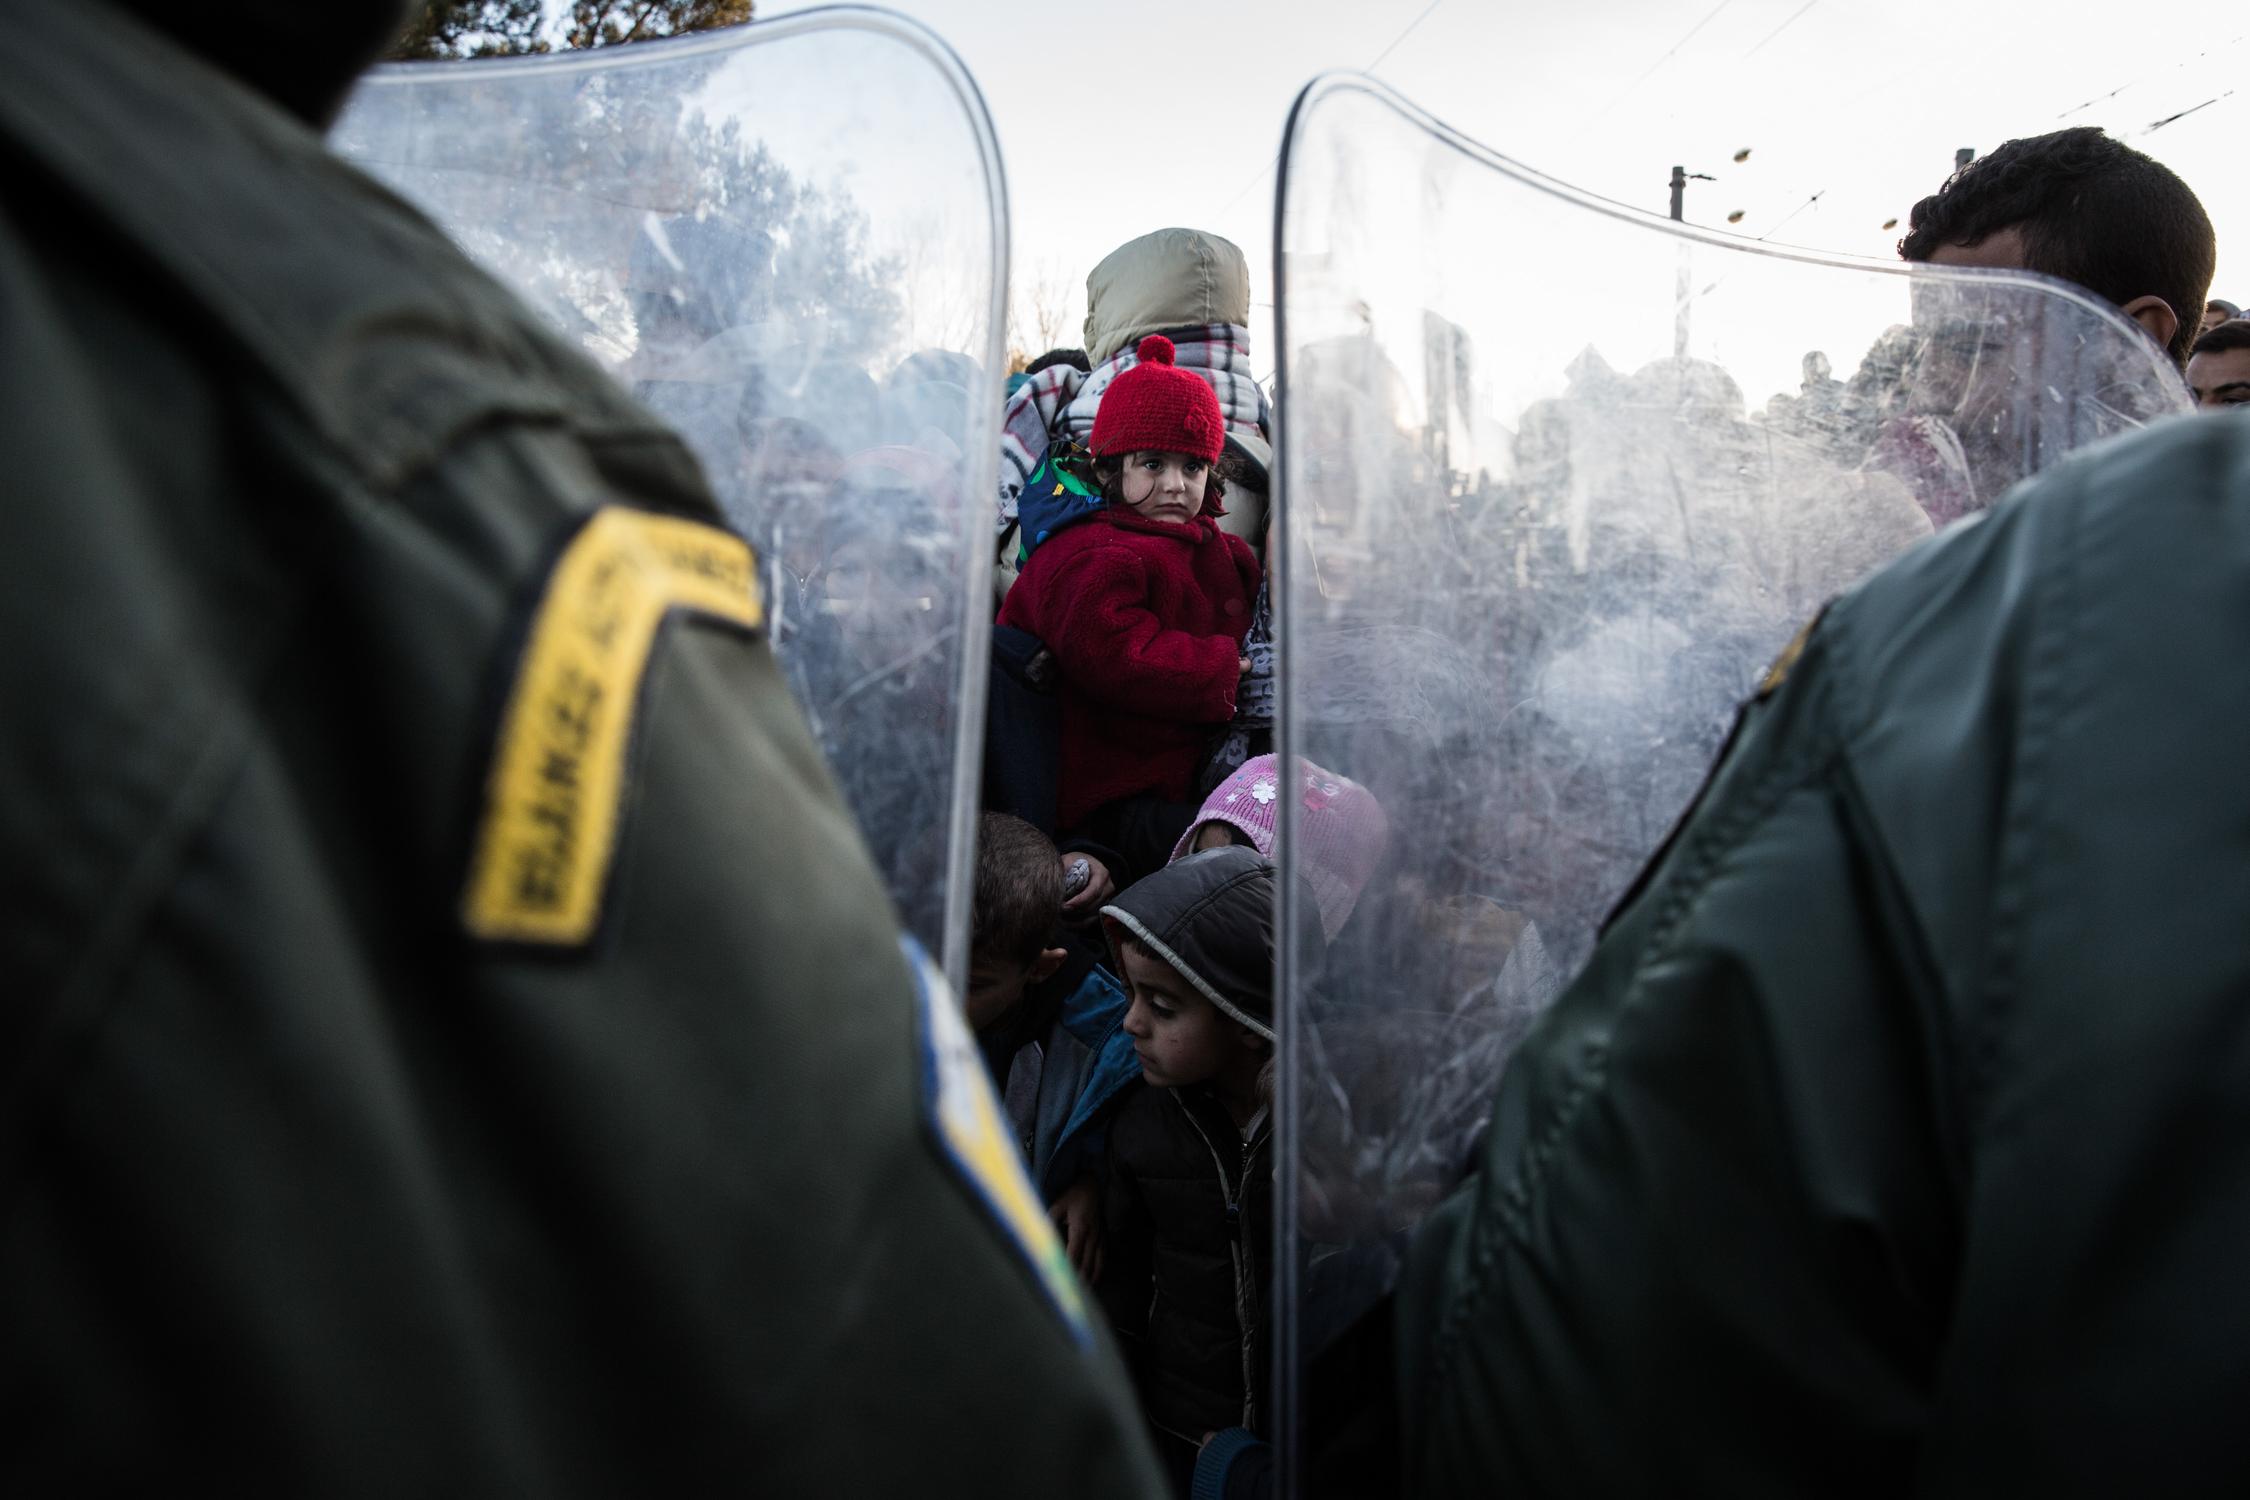 Χιλιάδες πρόσφυγες περιμένουν απο τις αστυνομικές αρχές να τους επιτρέψουν να περάσουν απο τα σύνορα Ελλάδας-πΓΔΜ, στην Ειδομένη, 3 Δεκεμβρίου 2015. Φωτογραφία: Κωνσταντίνος Τσακαλίδης / SOOC